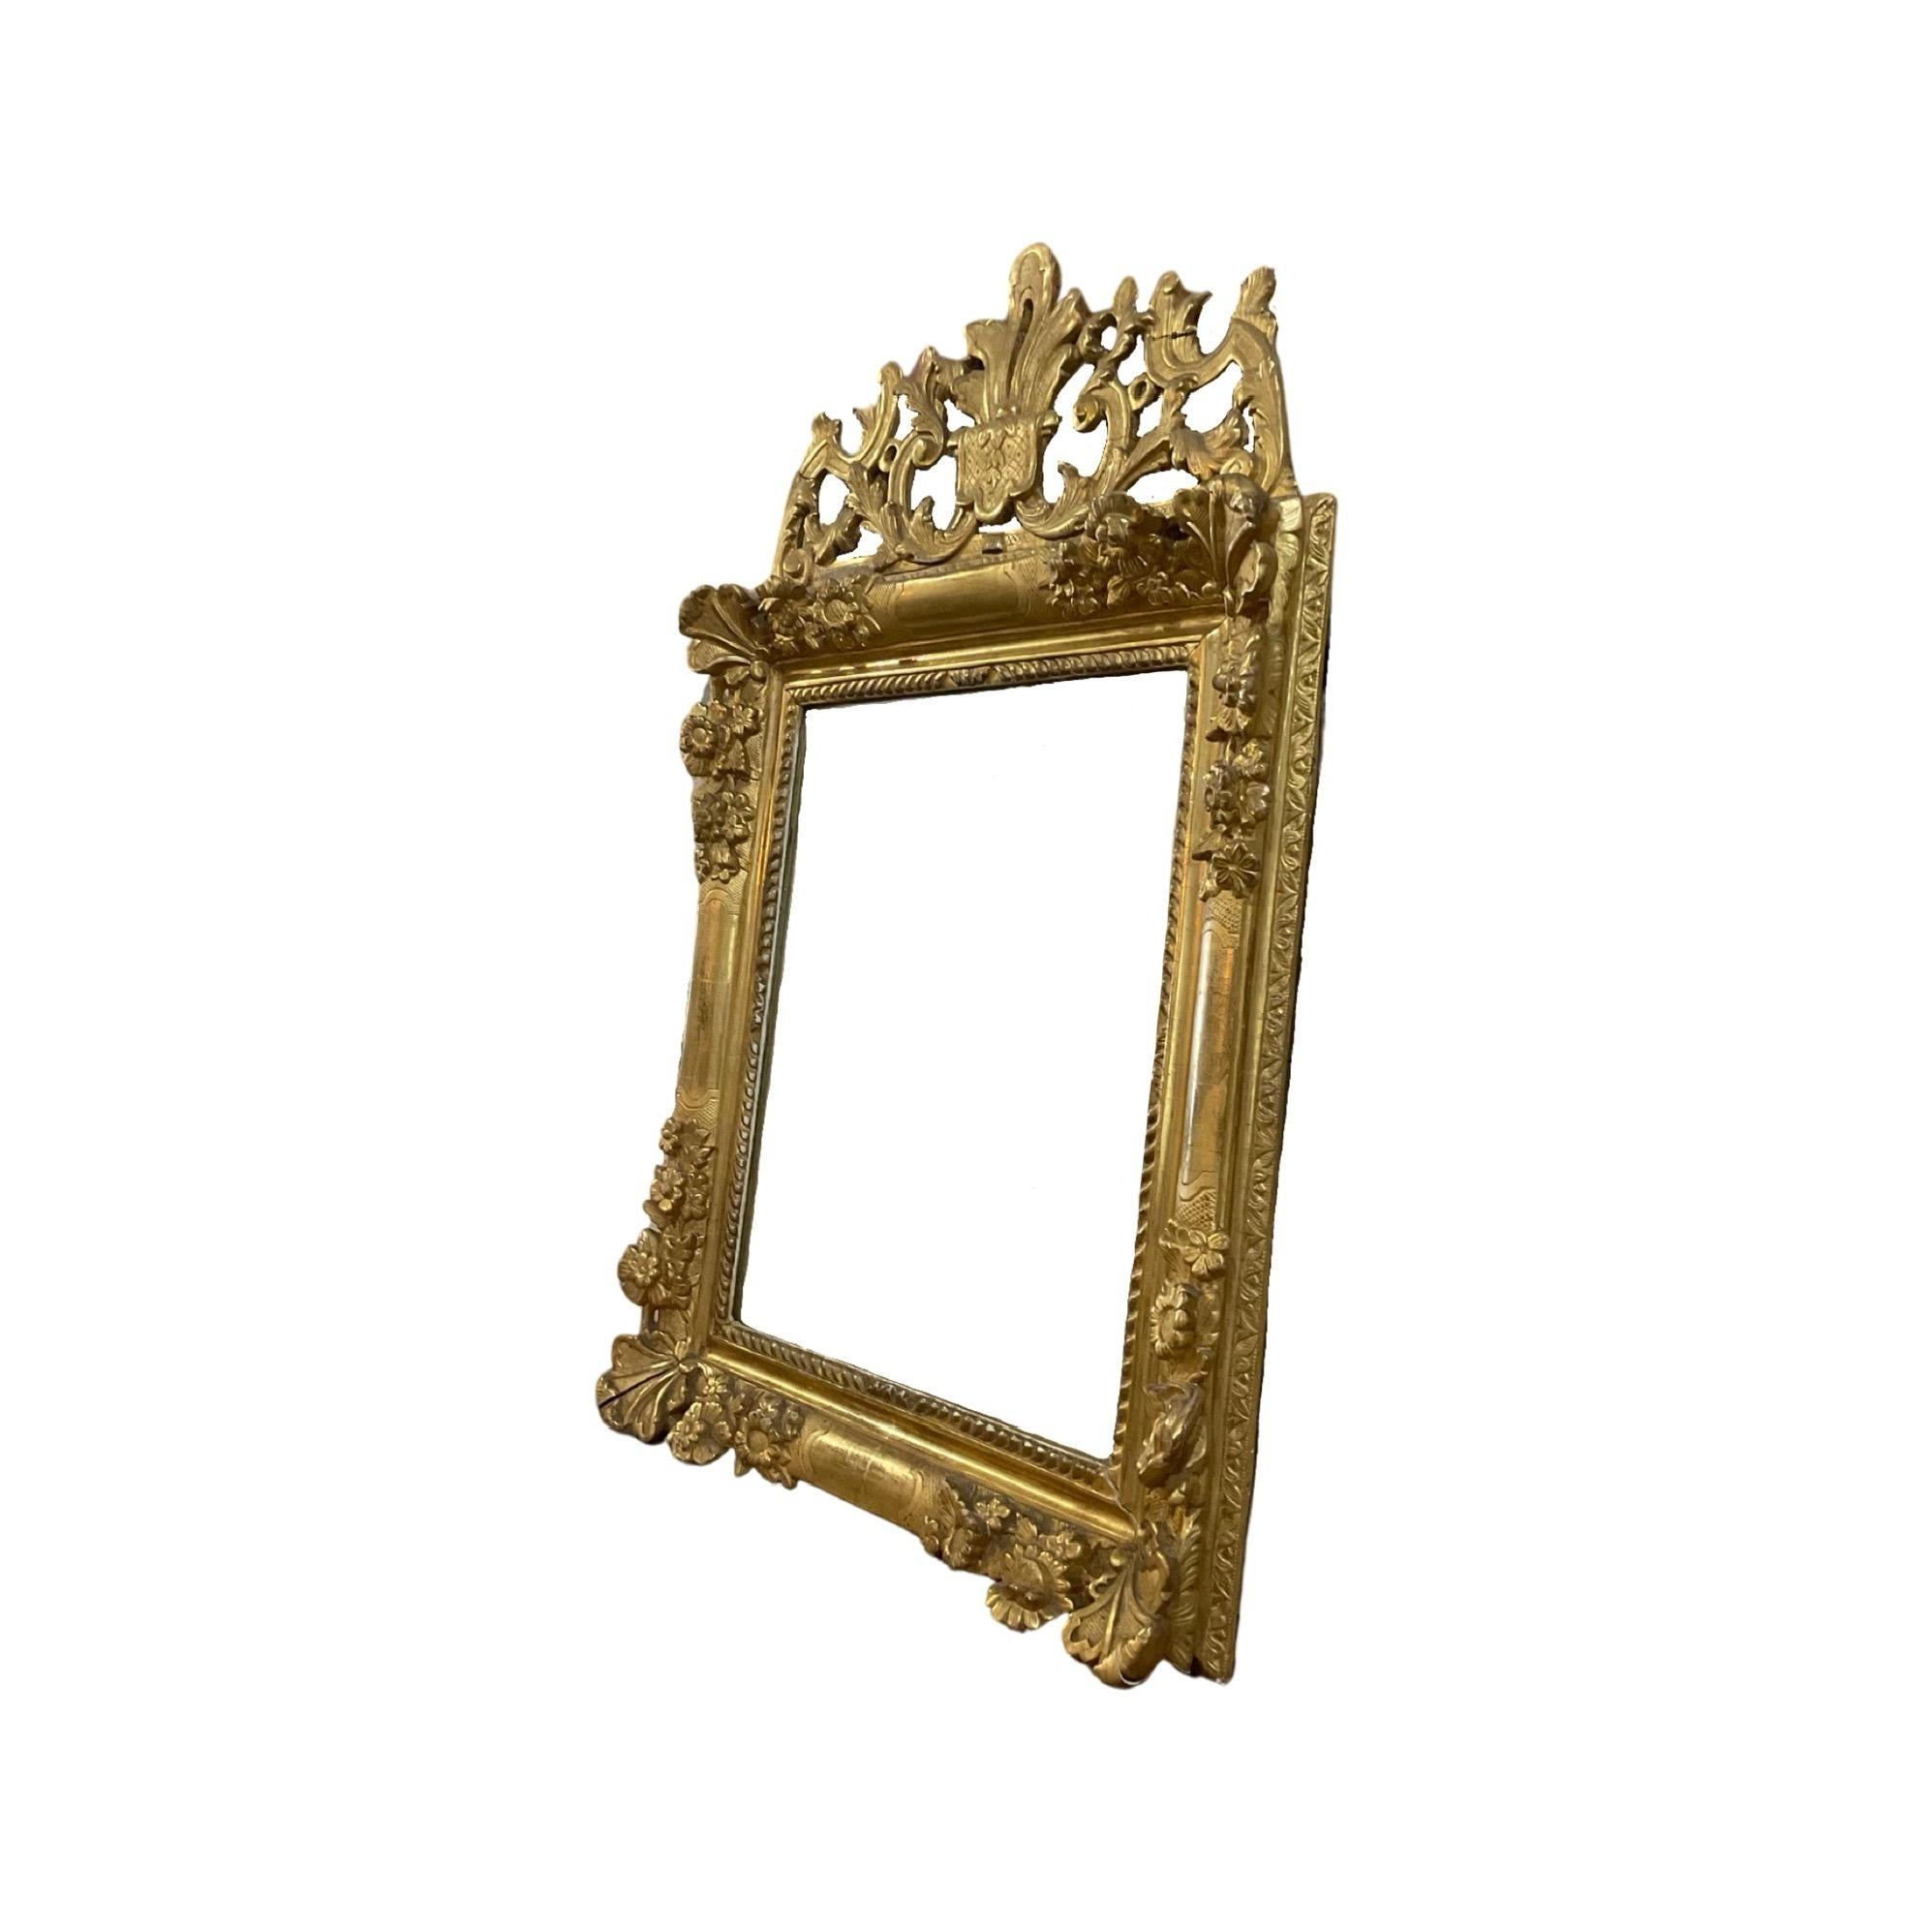 Miroir de style Louis XVI. Le miroir est fabriqué en bois de chêne. Plâtre sculpté à la main avec finition à la feuille d'or. Originaire de France. Circa, 18ème siècle. 

 